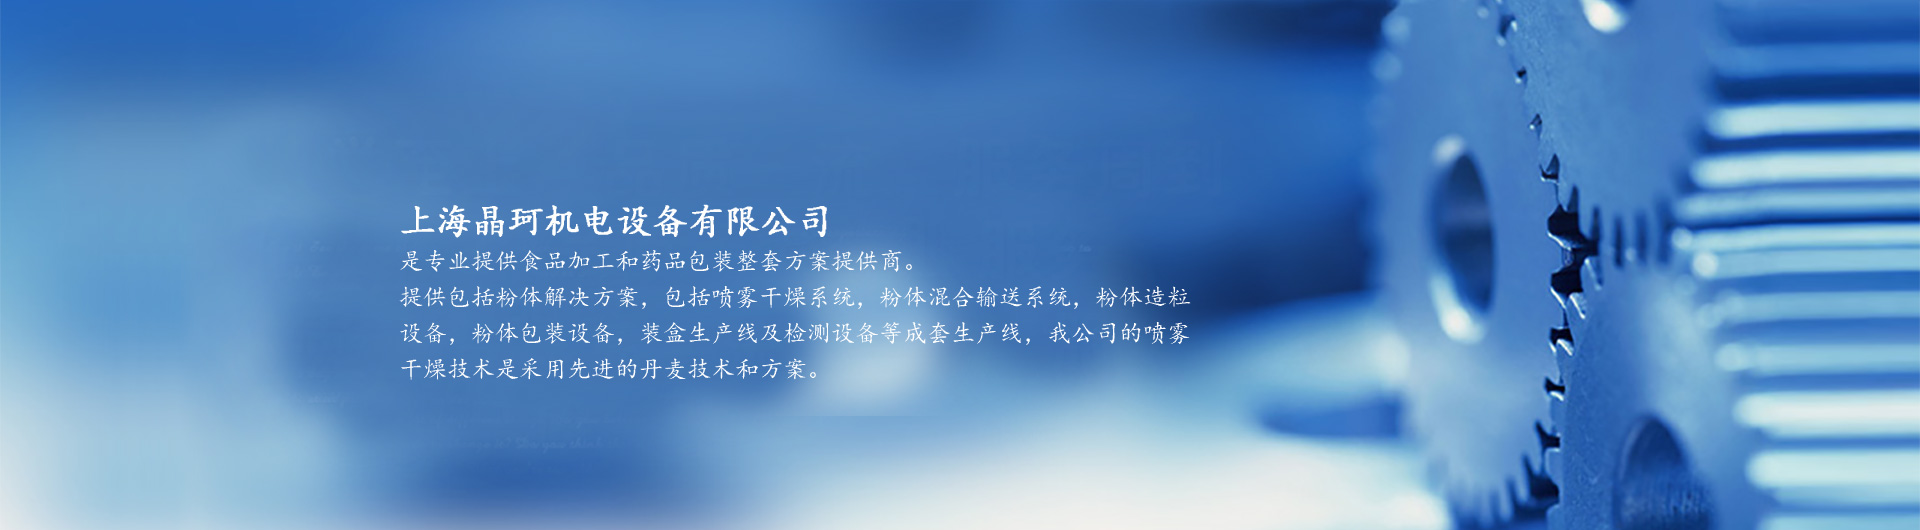 上海晶珂机电设备有限公司